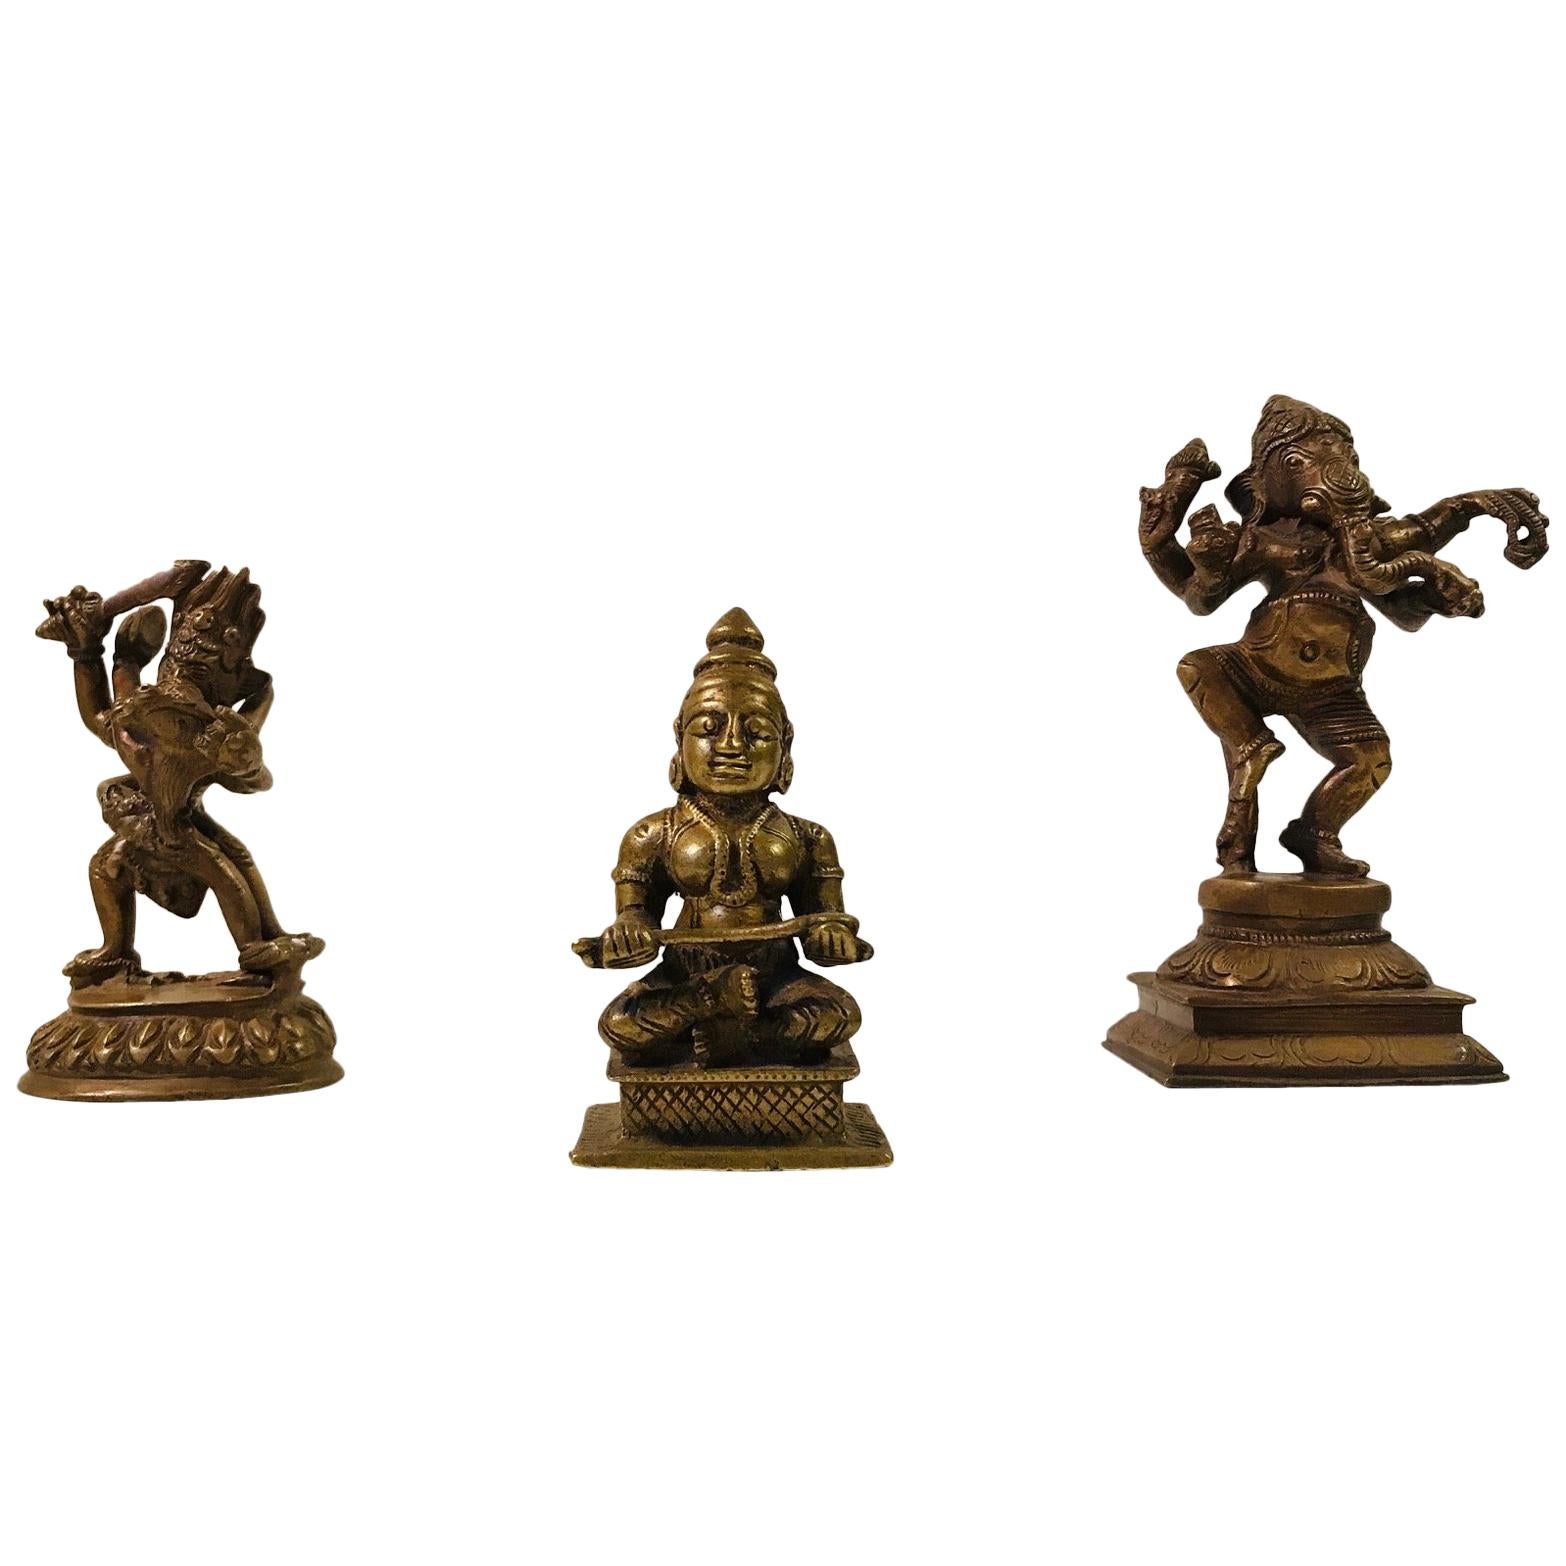 Trio antiker hinduistischer Götterfiguren aus Bronze, Maha Durga, Shiva und Ganesh